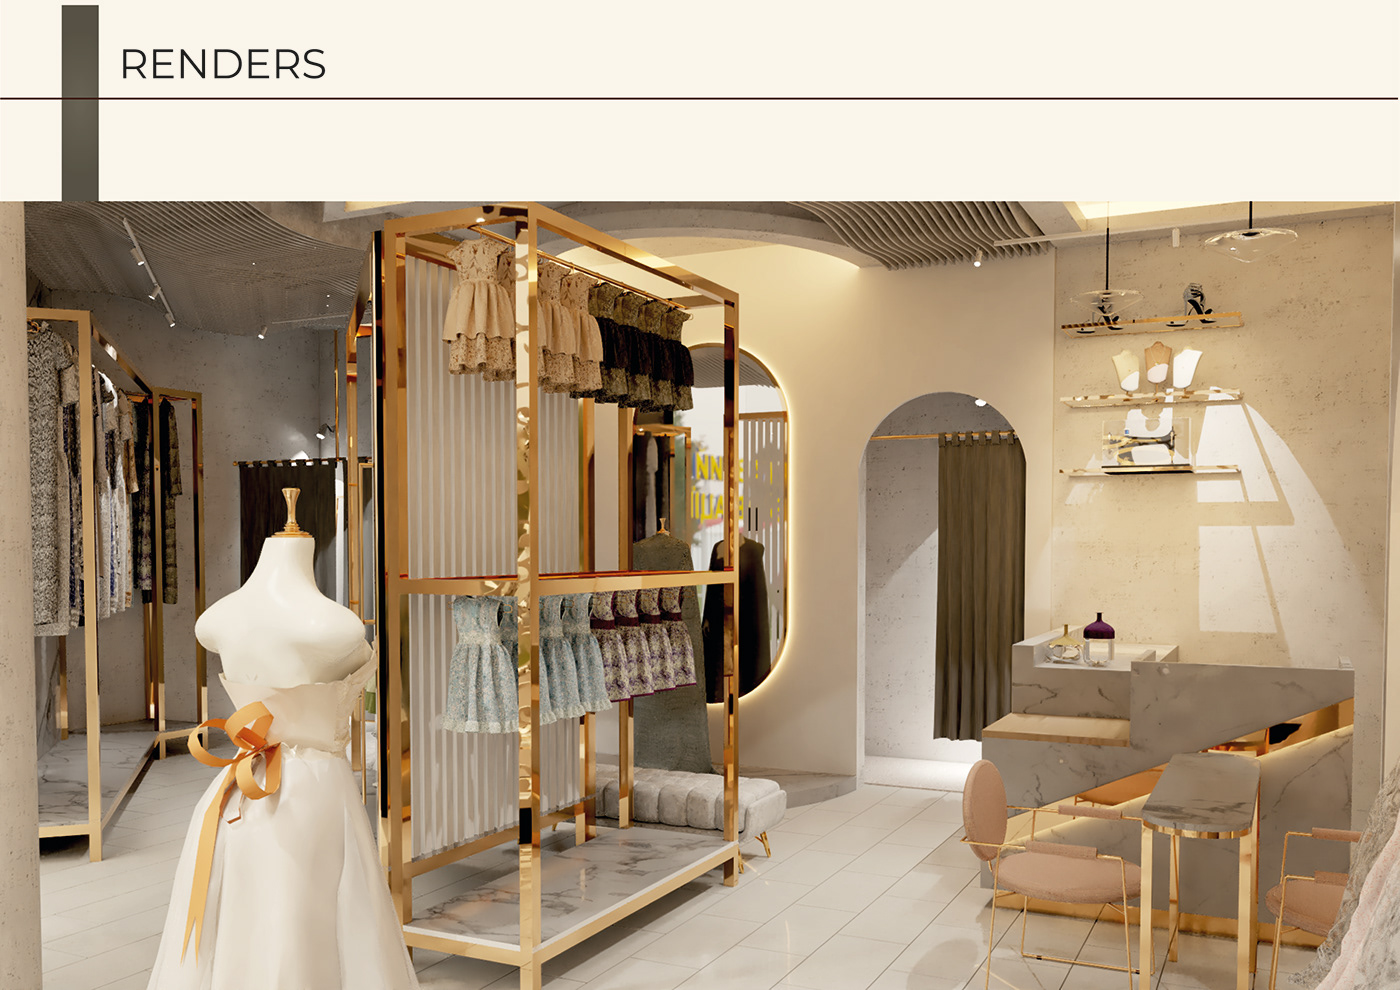 WEDDING DRESS bride wedding marriage Love Retail design retail store interior design  architecture 3D